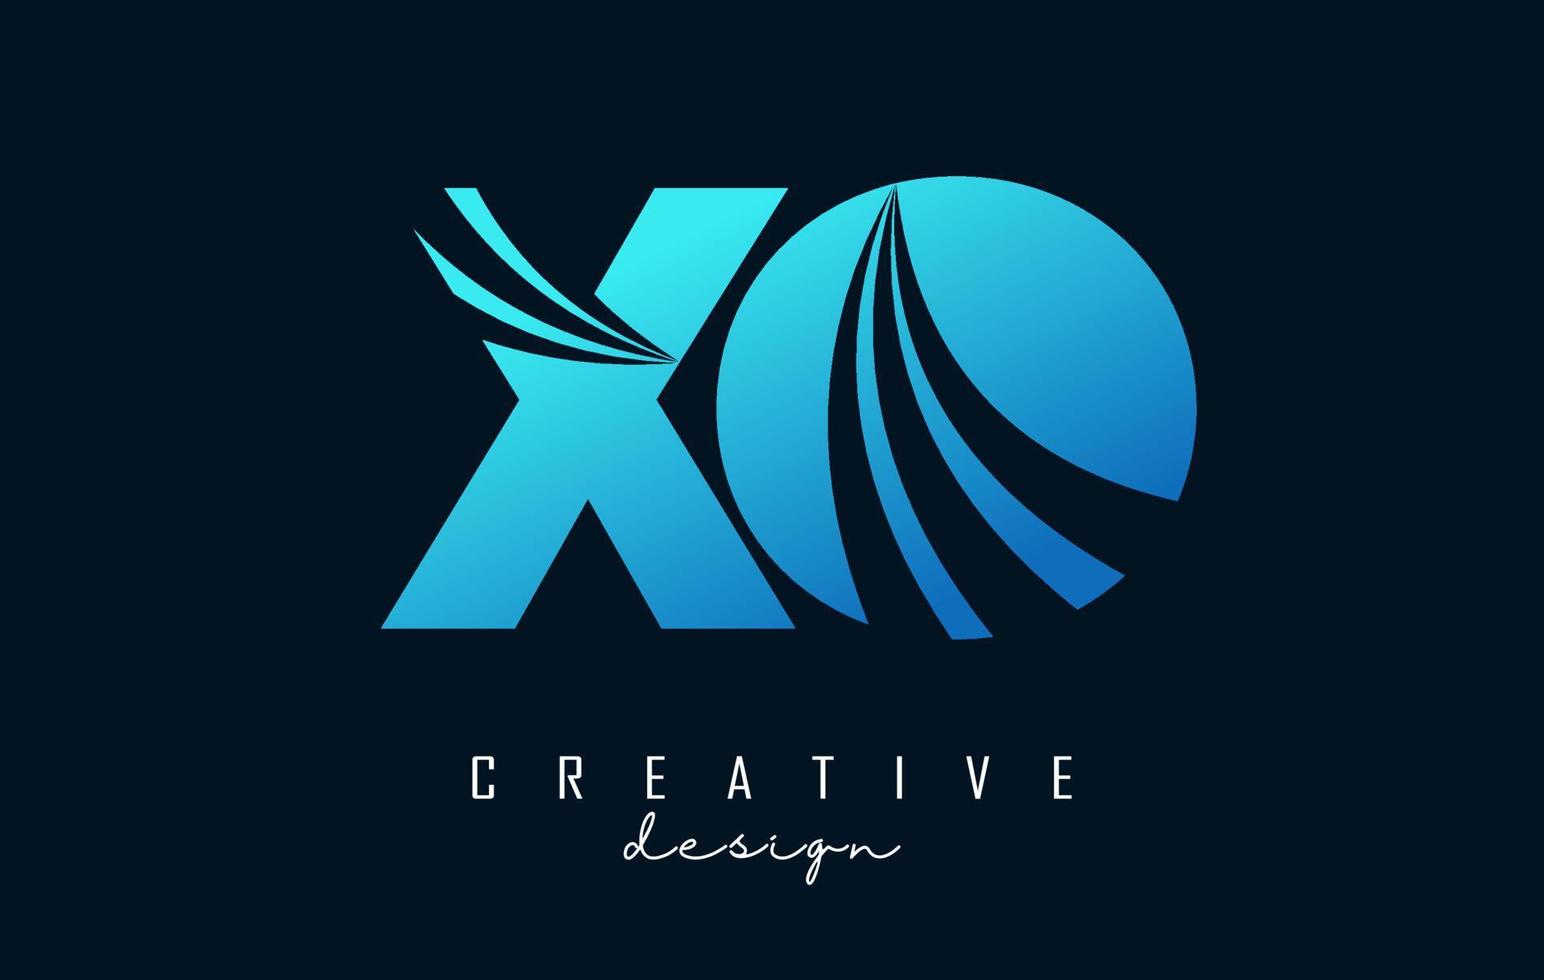 lettere blu creative logo xo xo con linee guida e concept design stradale. lettere con disegno geometrico. vettore